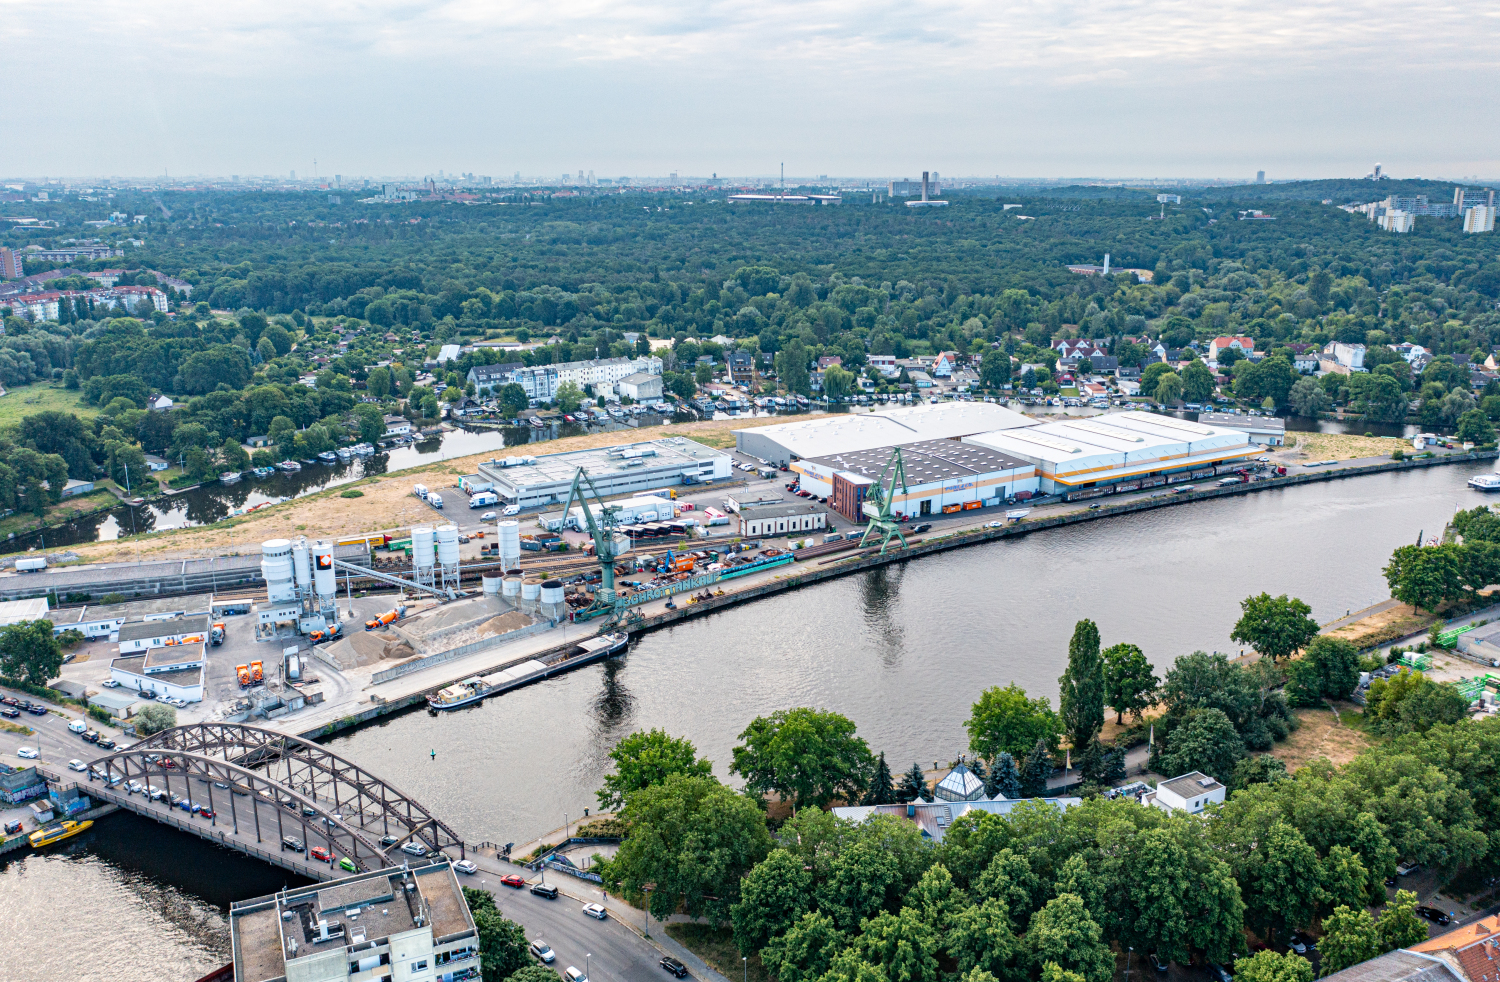 Luftbildaufnahme des Südhafens mit Zuführungsgleis; Schulenburgbrücke, Havel und Umgebung des Gebiets sind zu sehen.